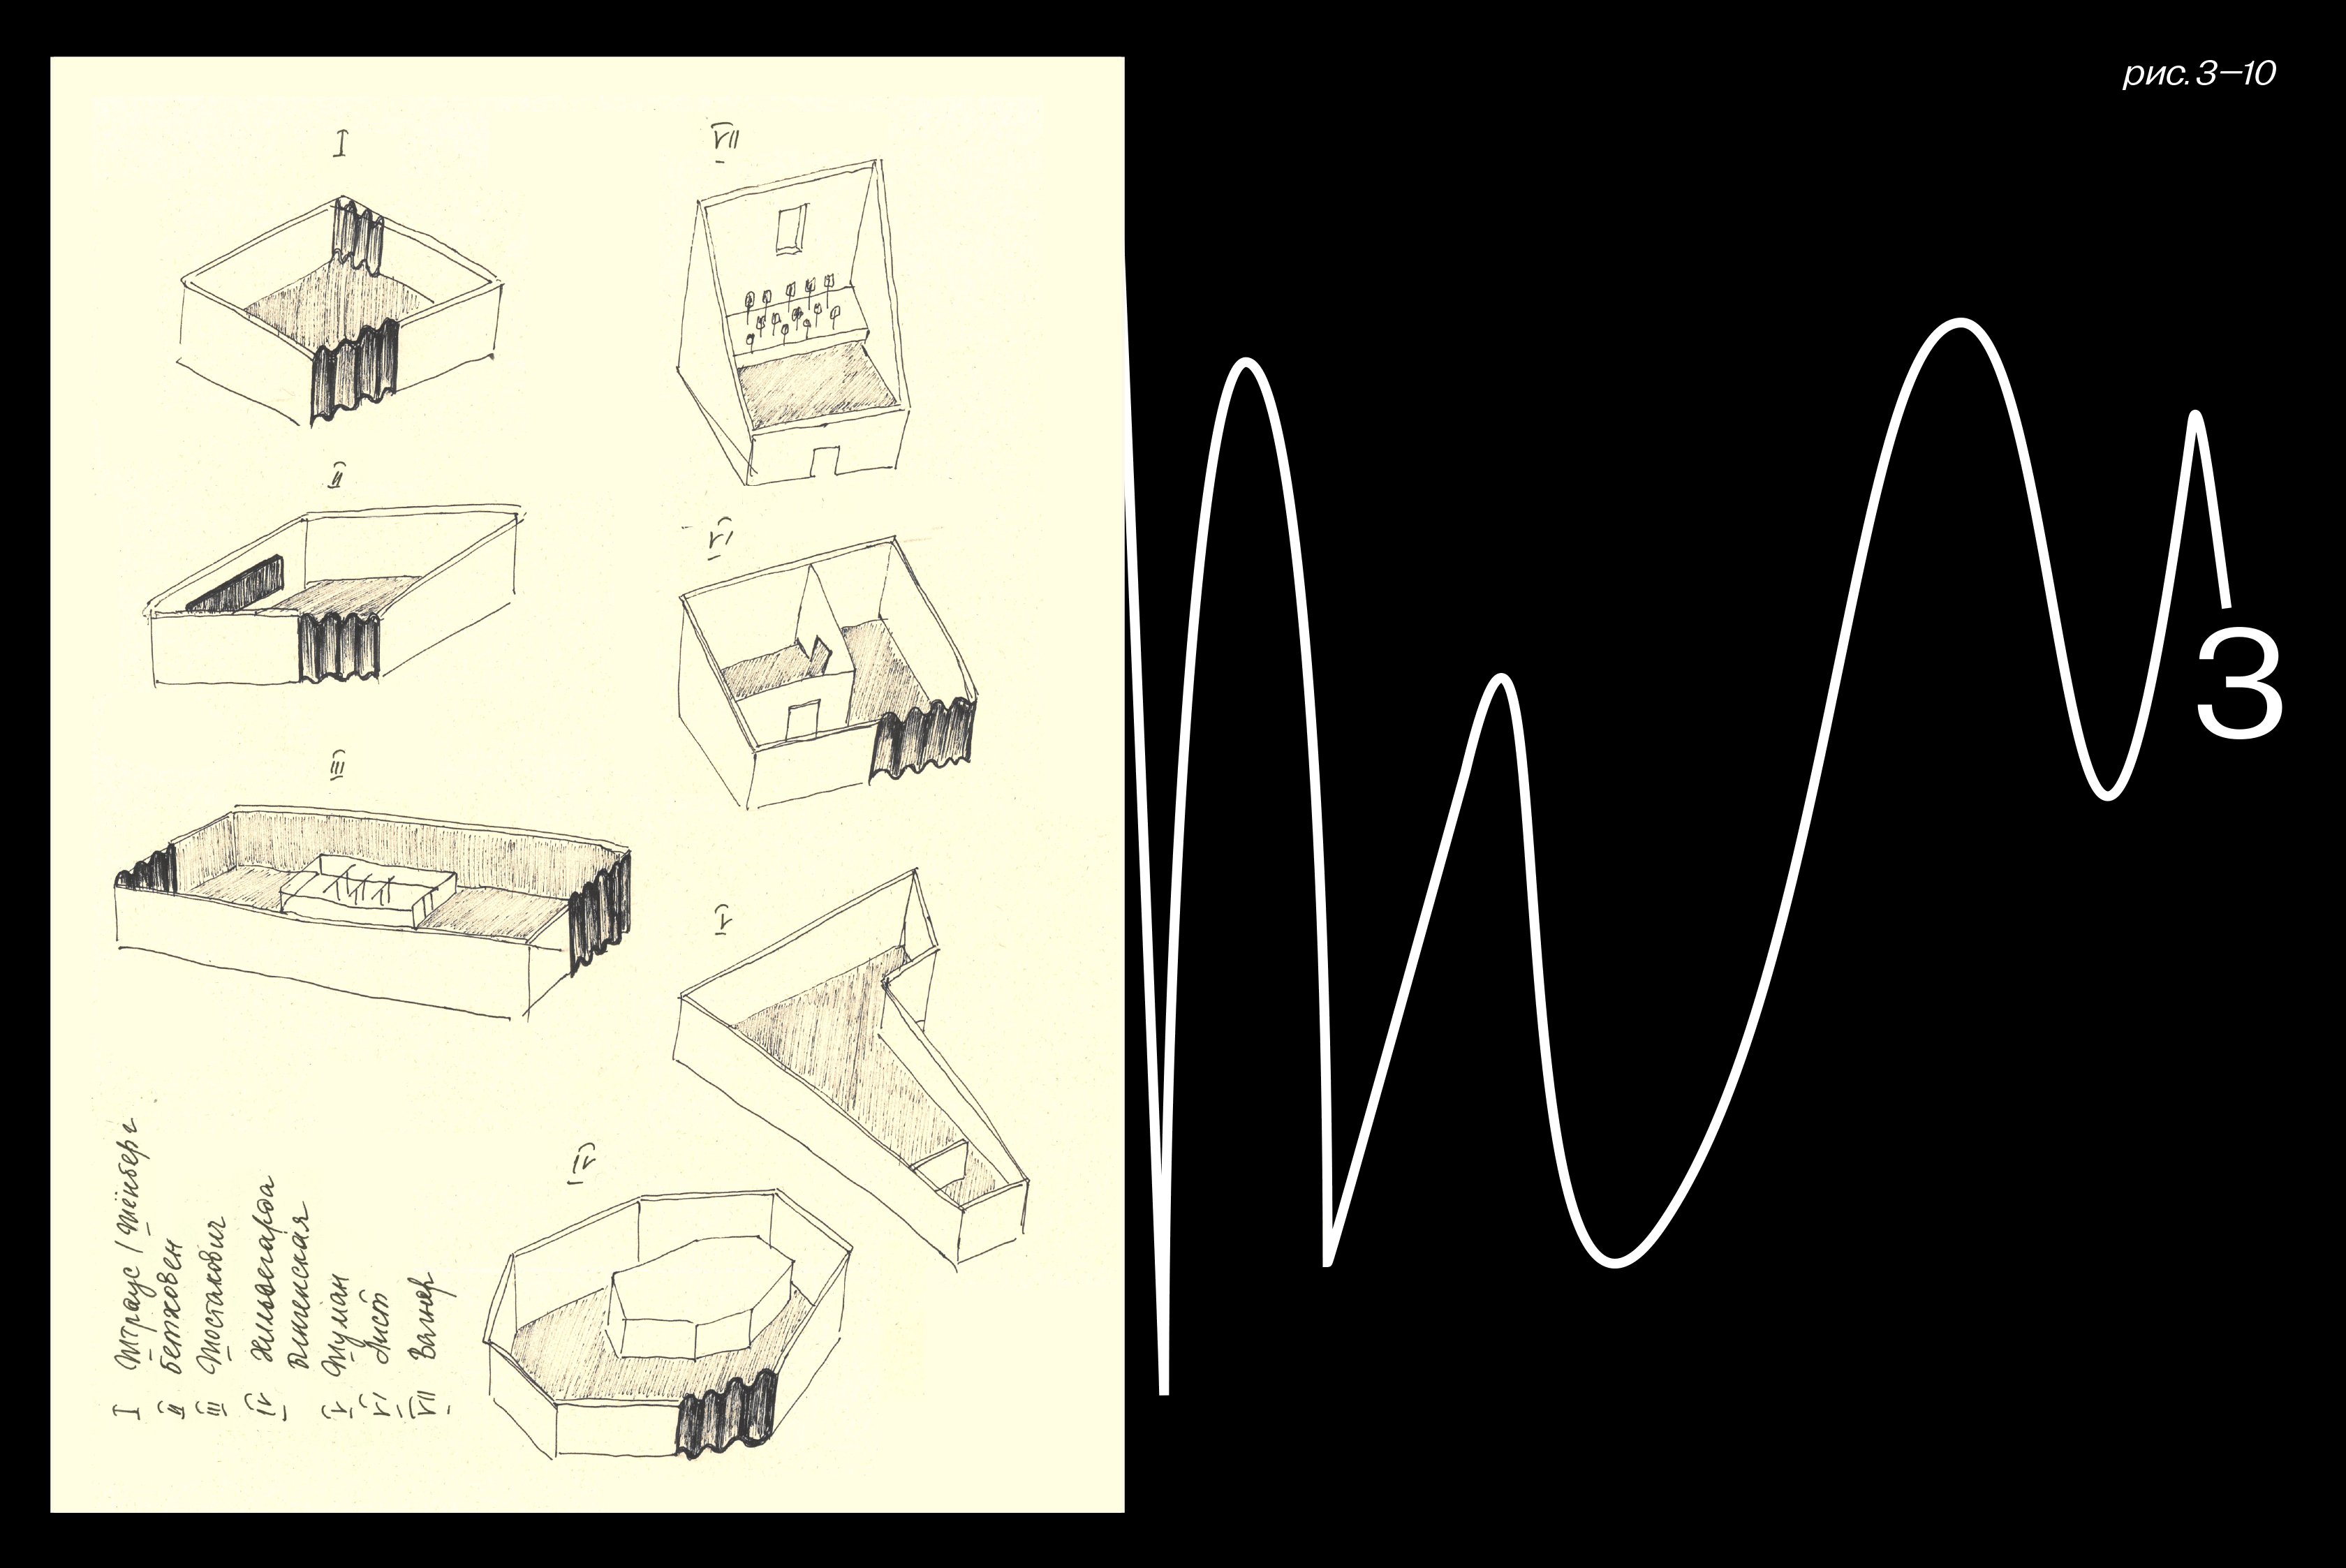 Титульное изображение для страницы события: карандашные рисунки каждого из 7 павильонов выставки; движущееся изображение звуковой волны; цифра 3; надпись «рис. 3-10»